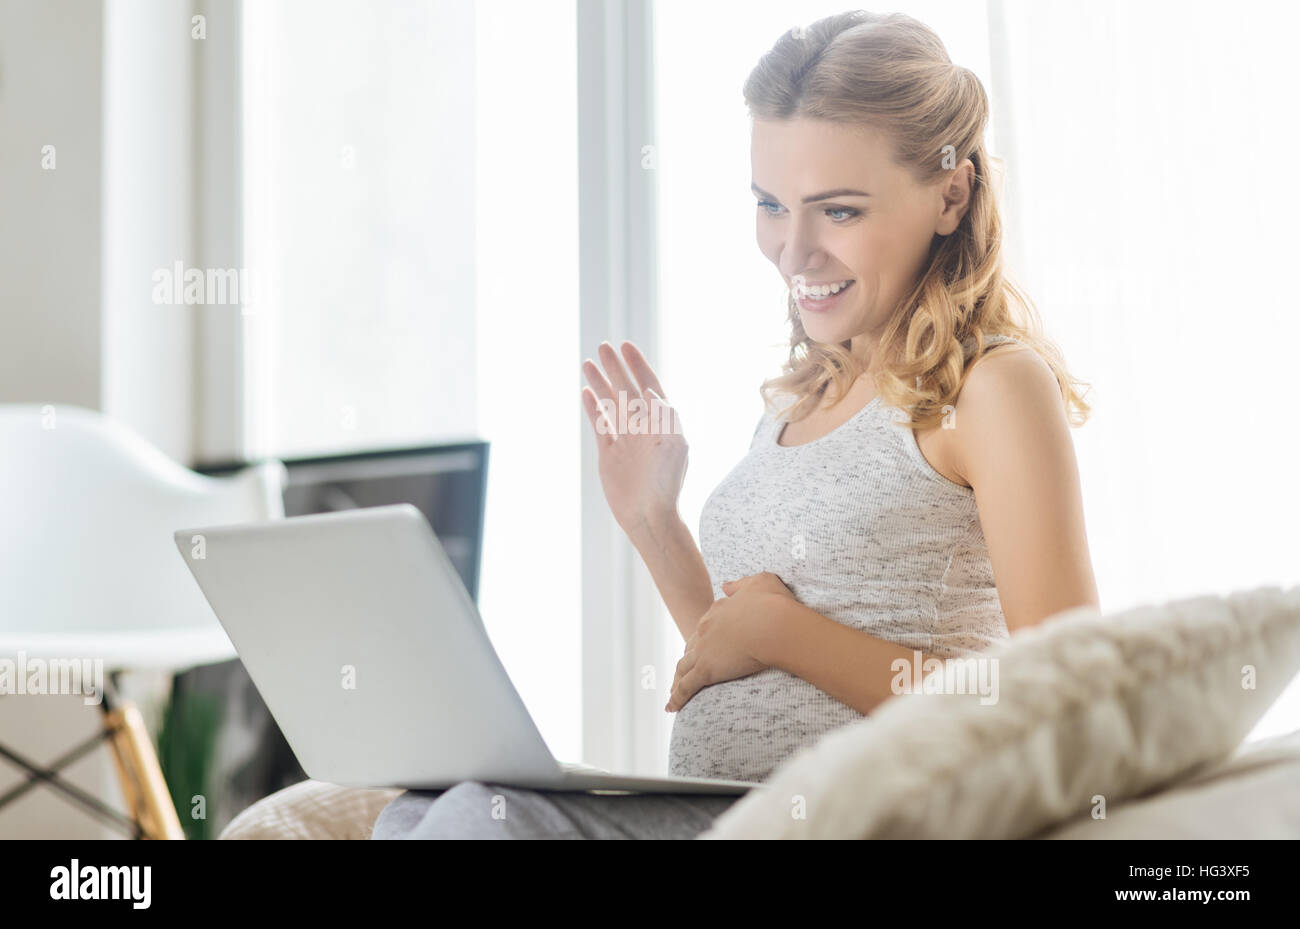 Woman conversation sur l'ordinateur portable dans la chambre Banque D'Images